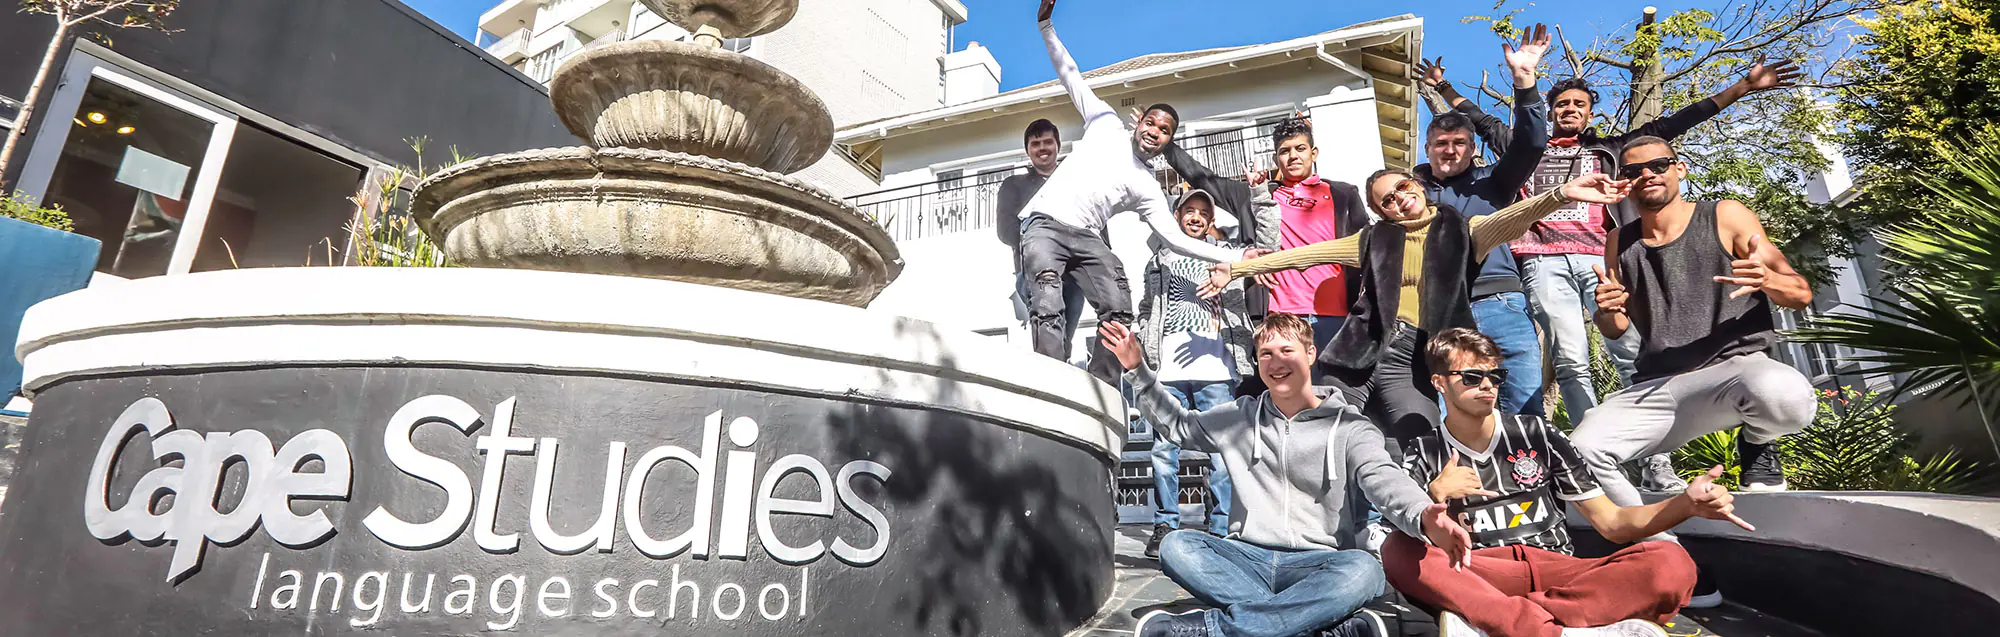 Programas de inglés para niños y adolescentes con CapeStudies Cape Town